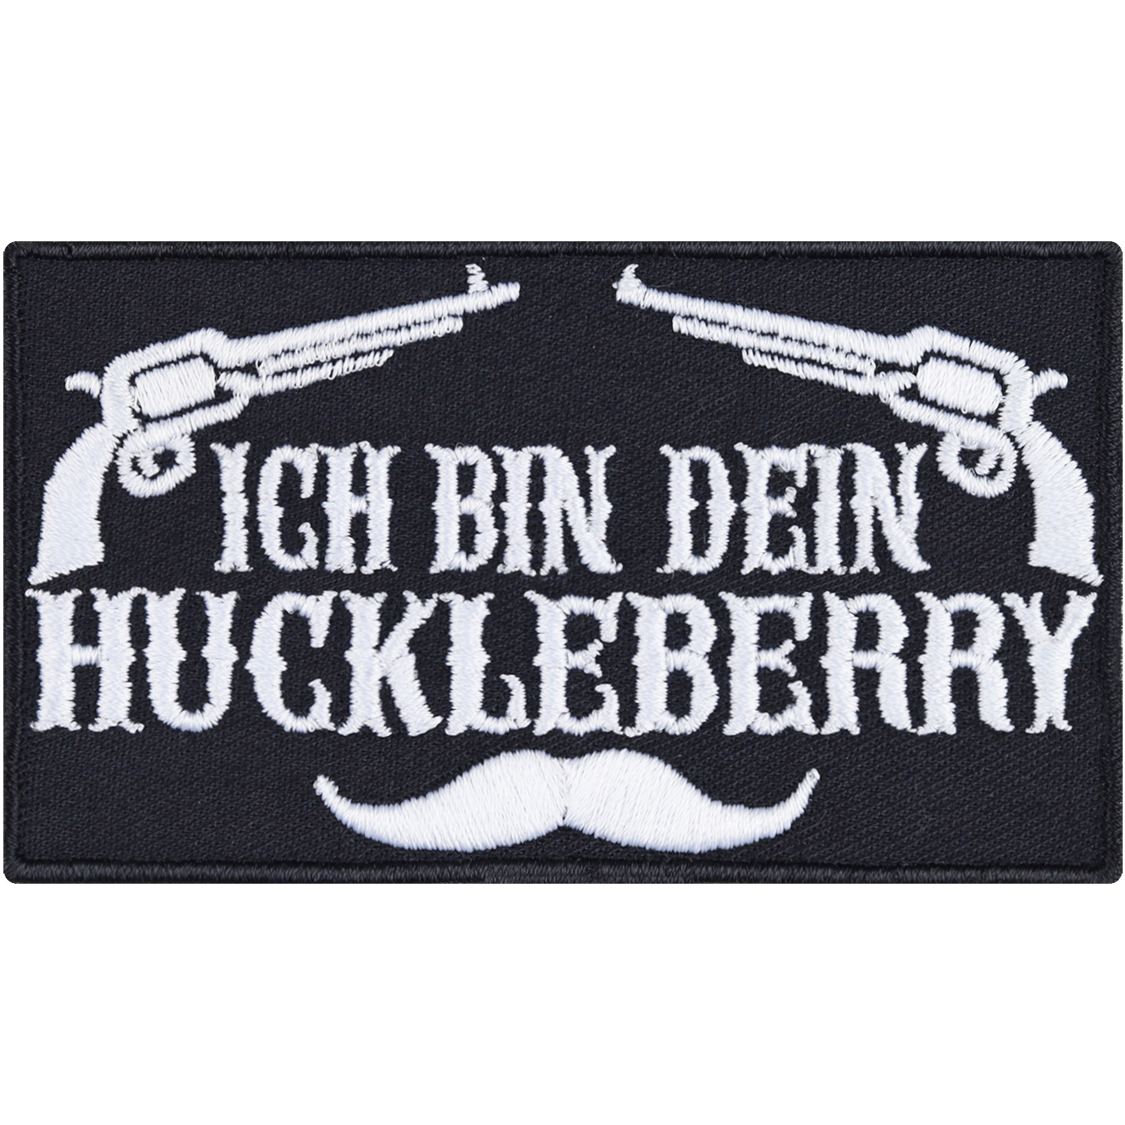 Ich bin dein Huckleberry - Patch